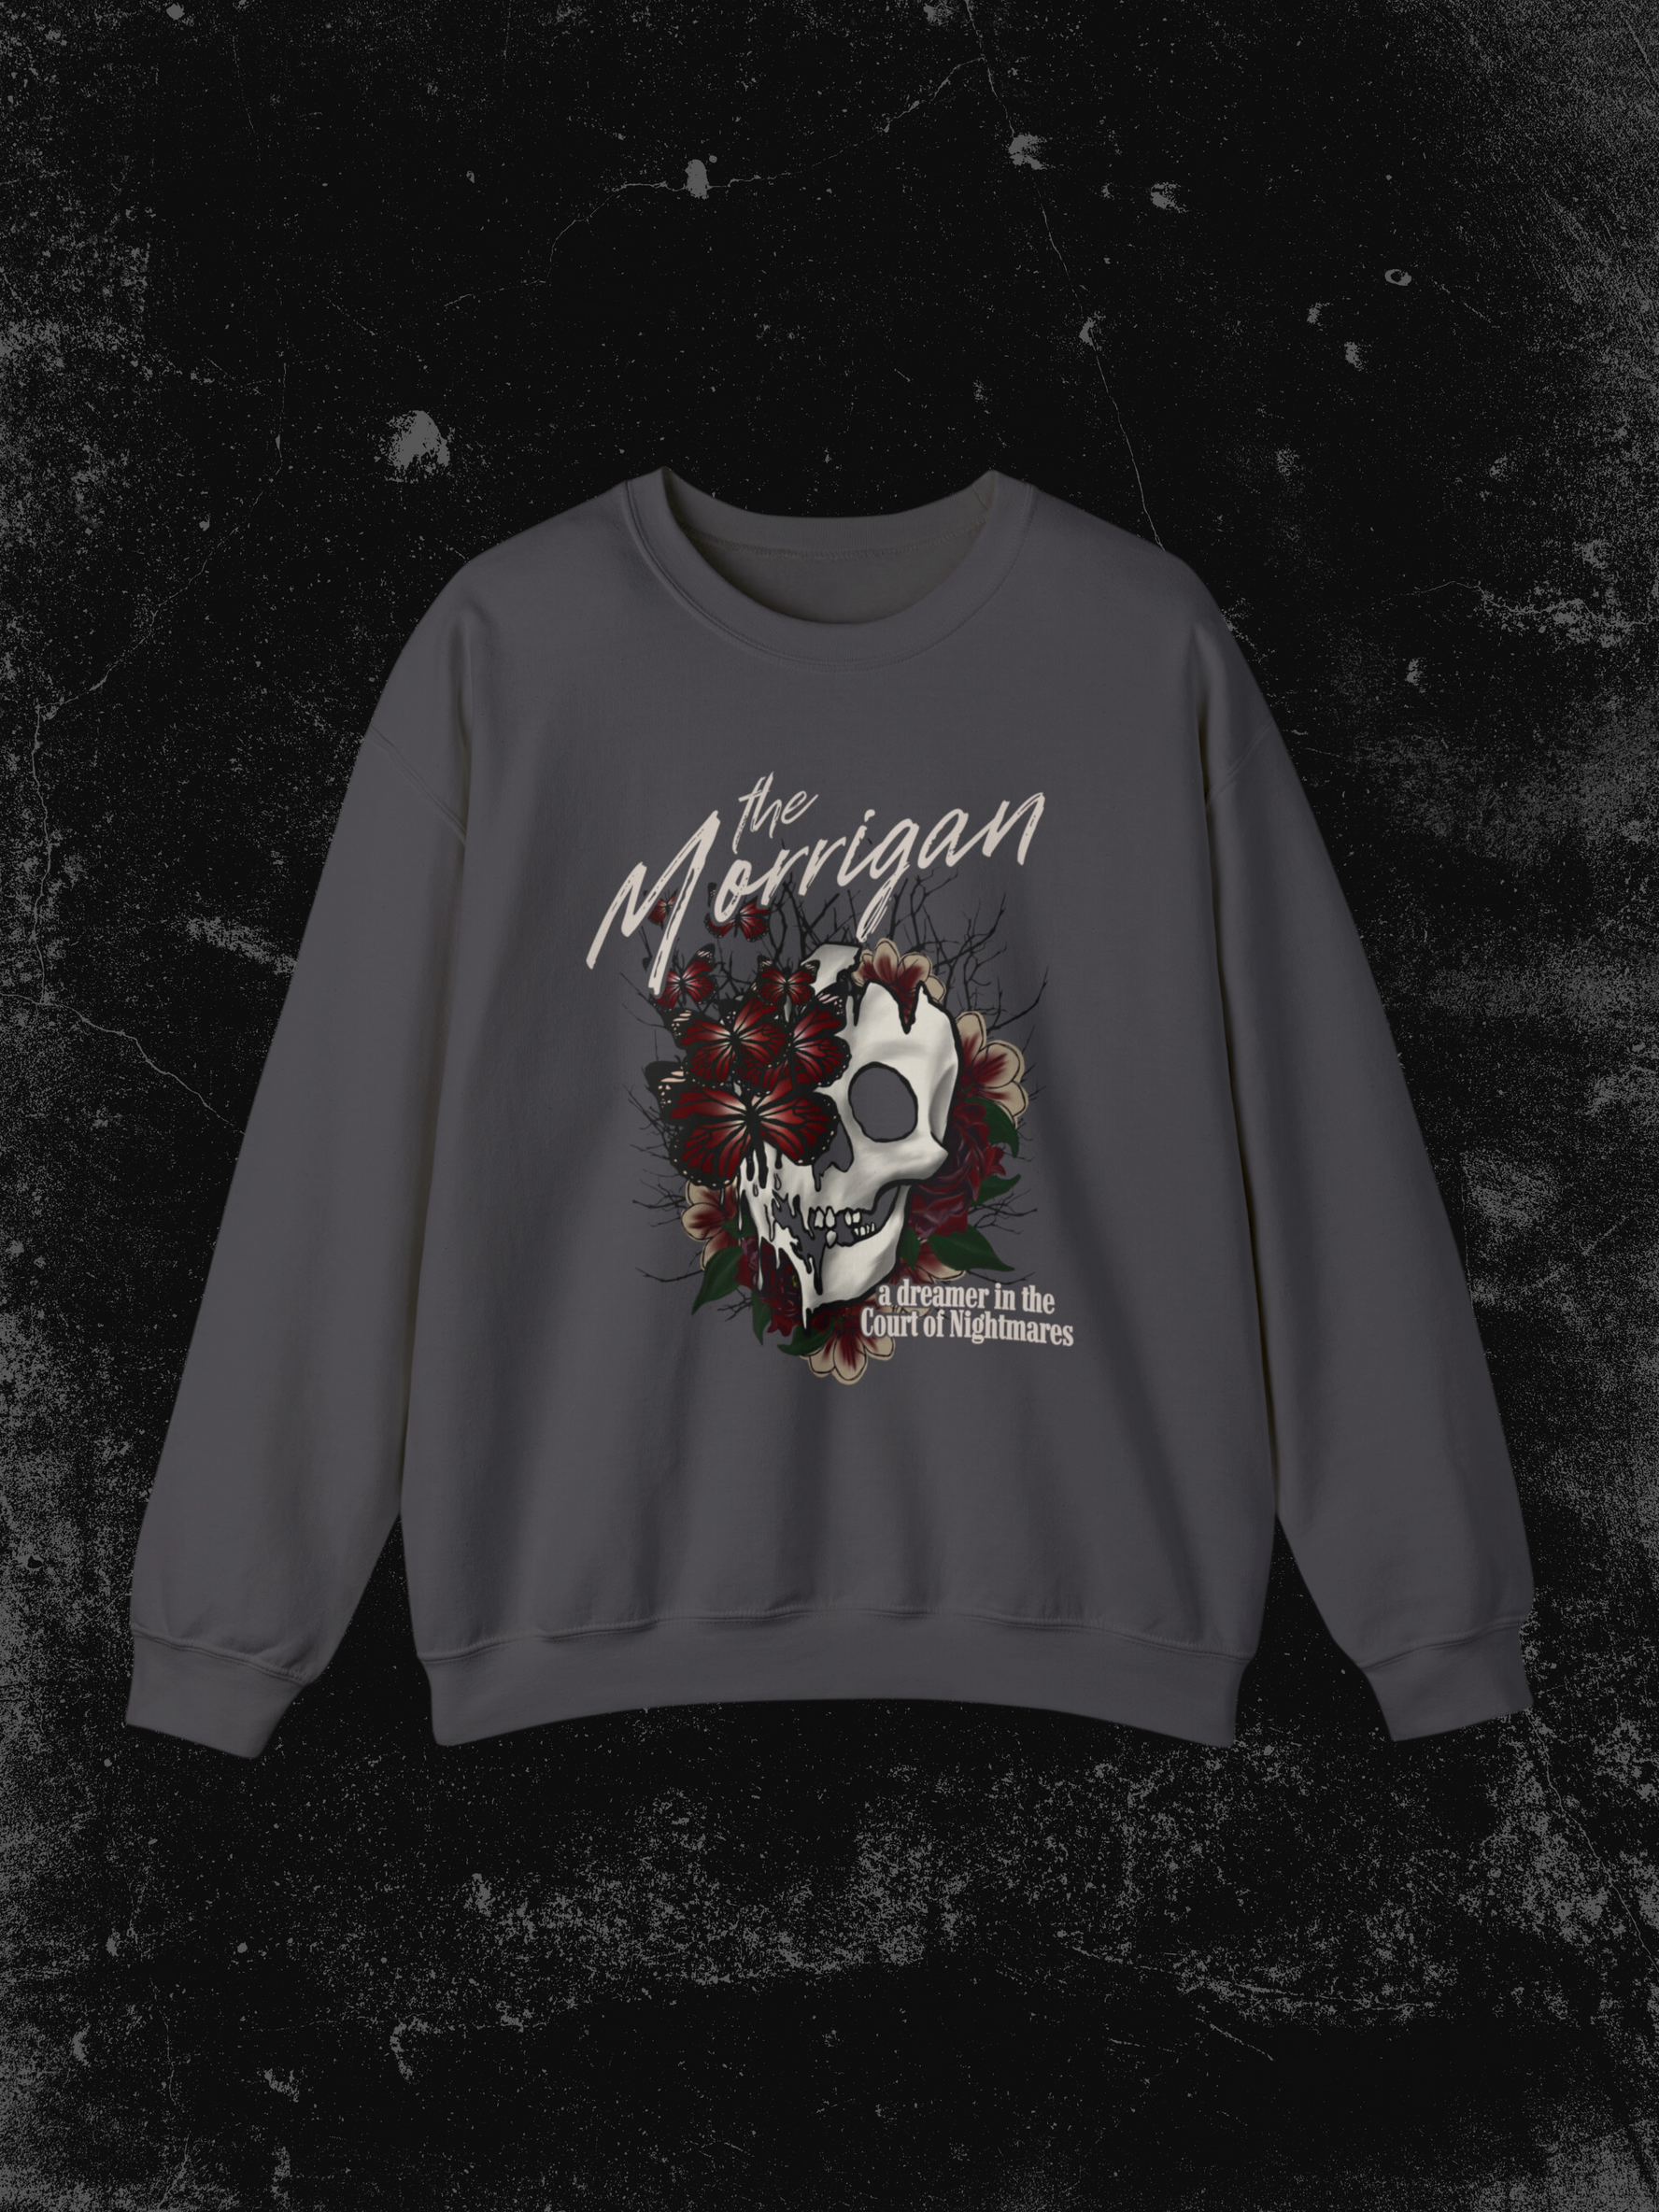 The Morrigan Sweatshirt